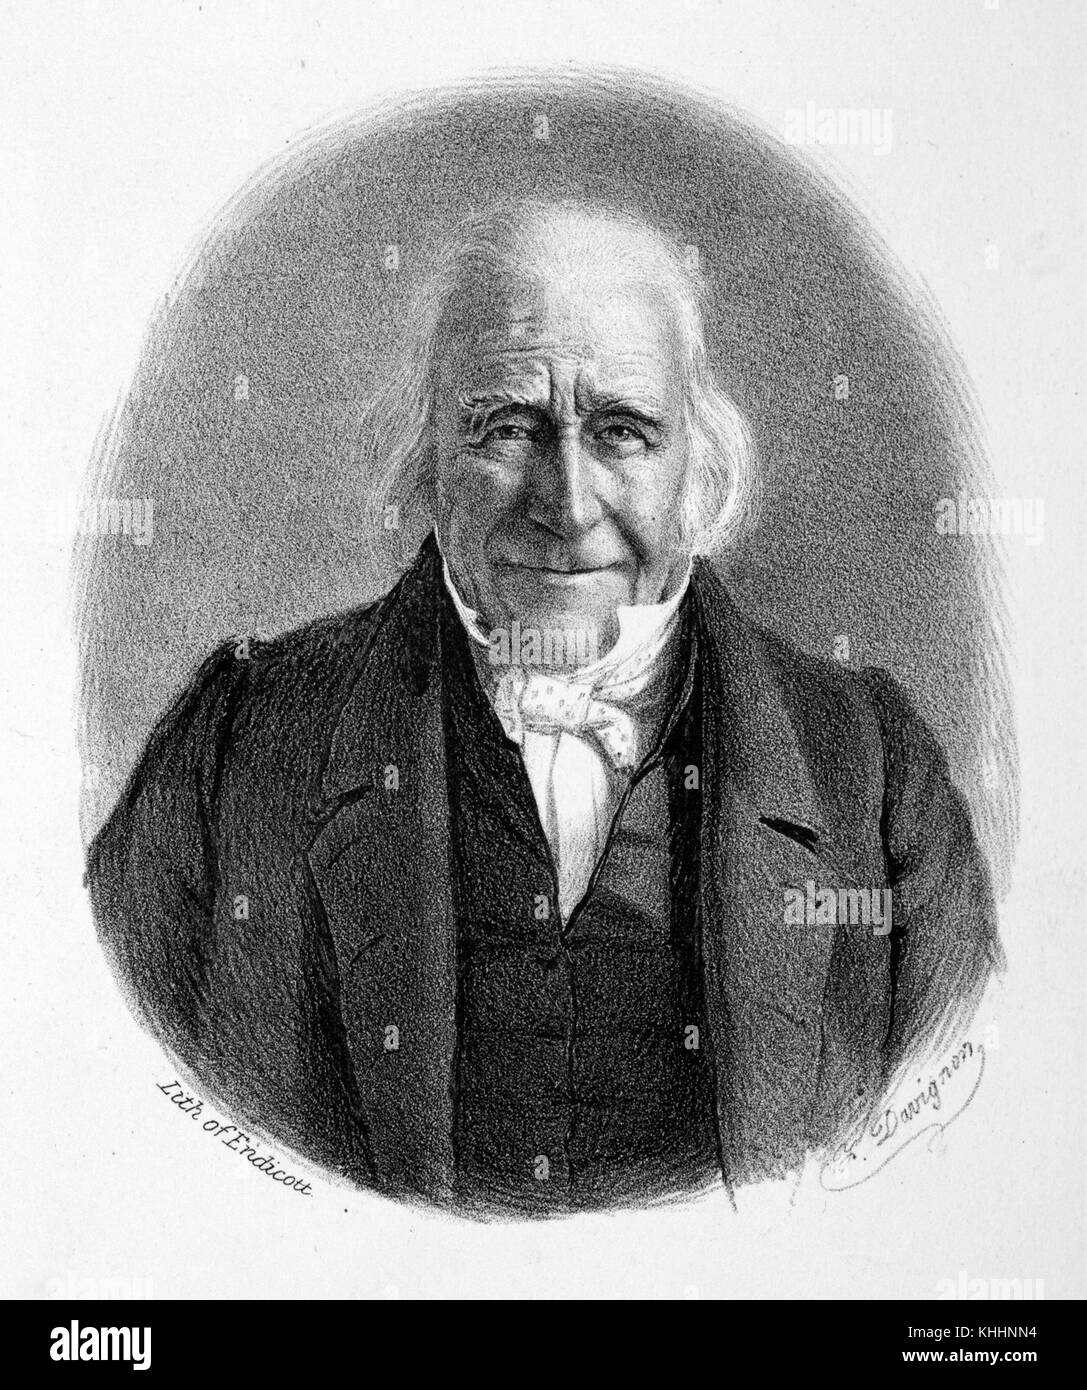 Litografia ritratto di Morgan Lewis, ex governatore di New York, da davignon, 1826. dalla biblioteca pubblica di new york. Foto Stock